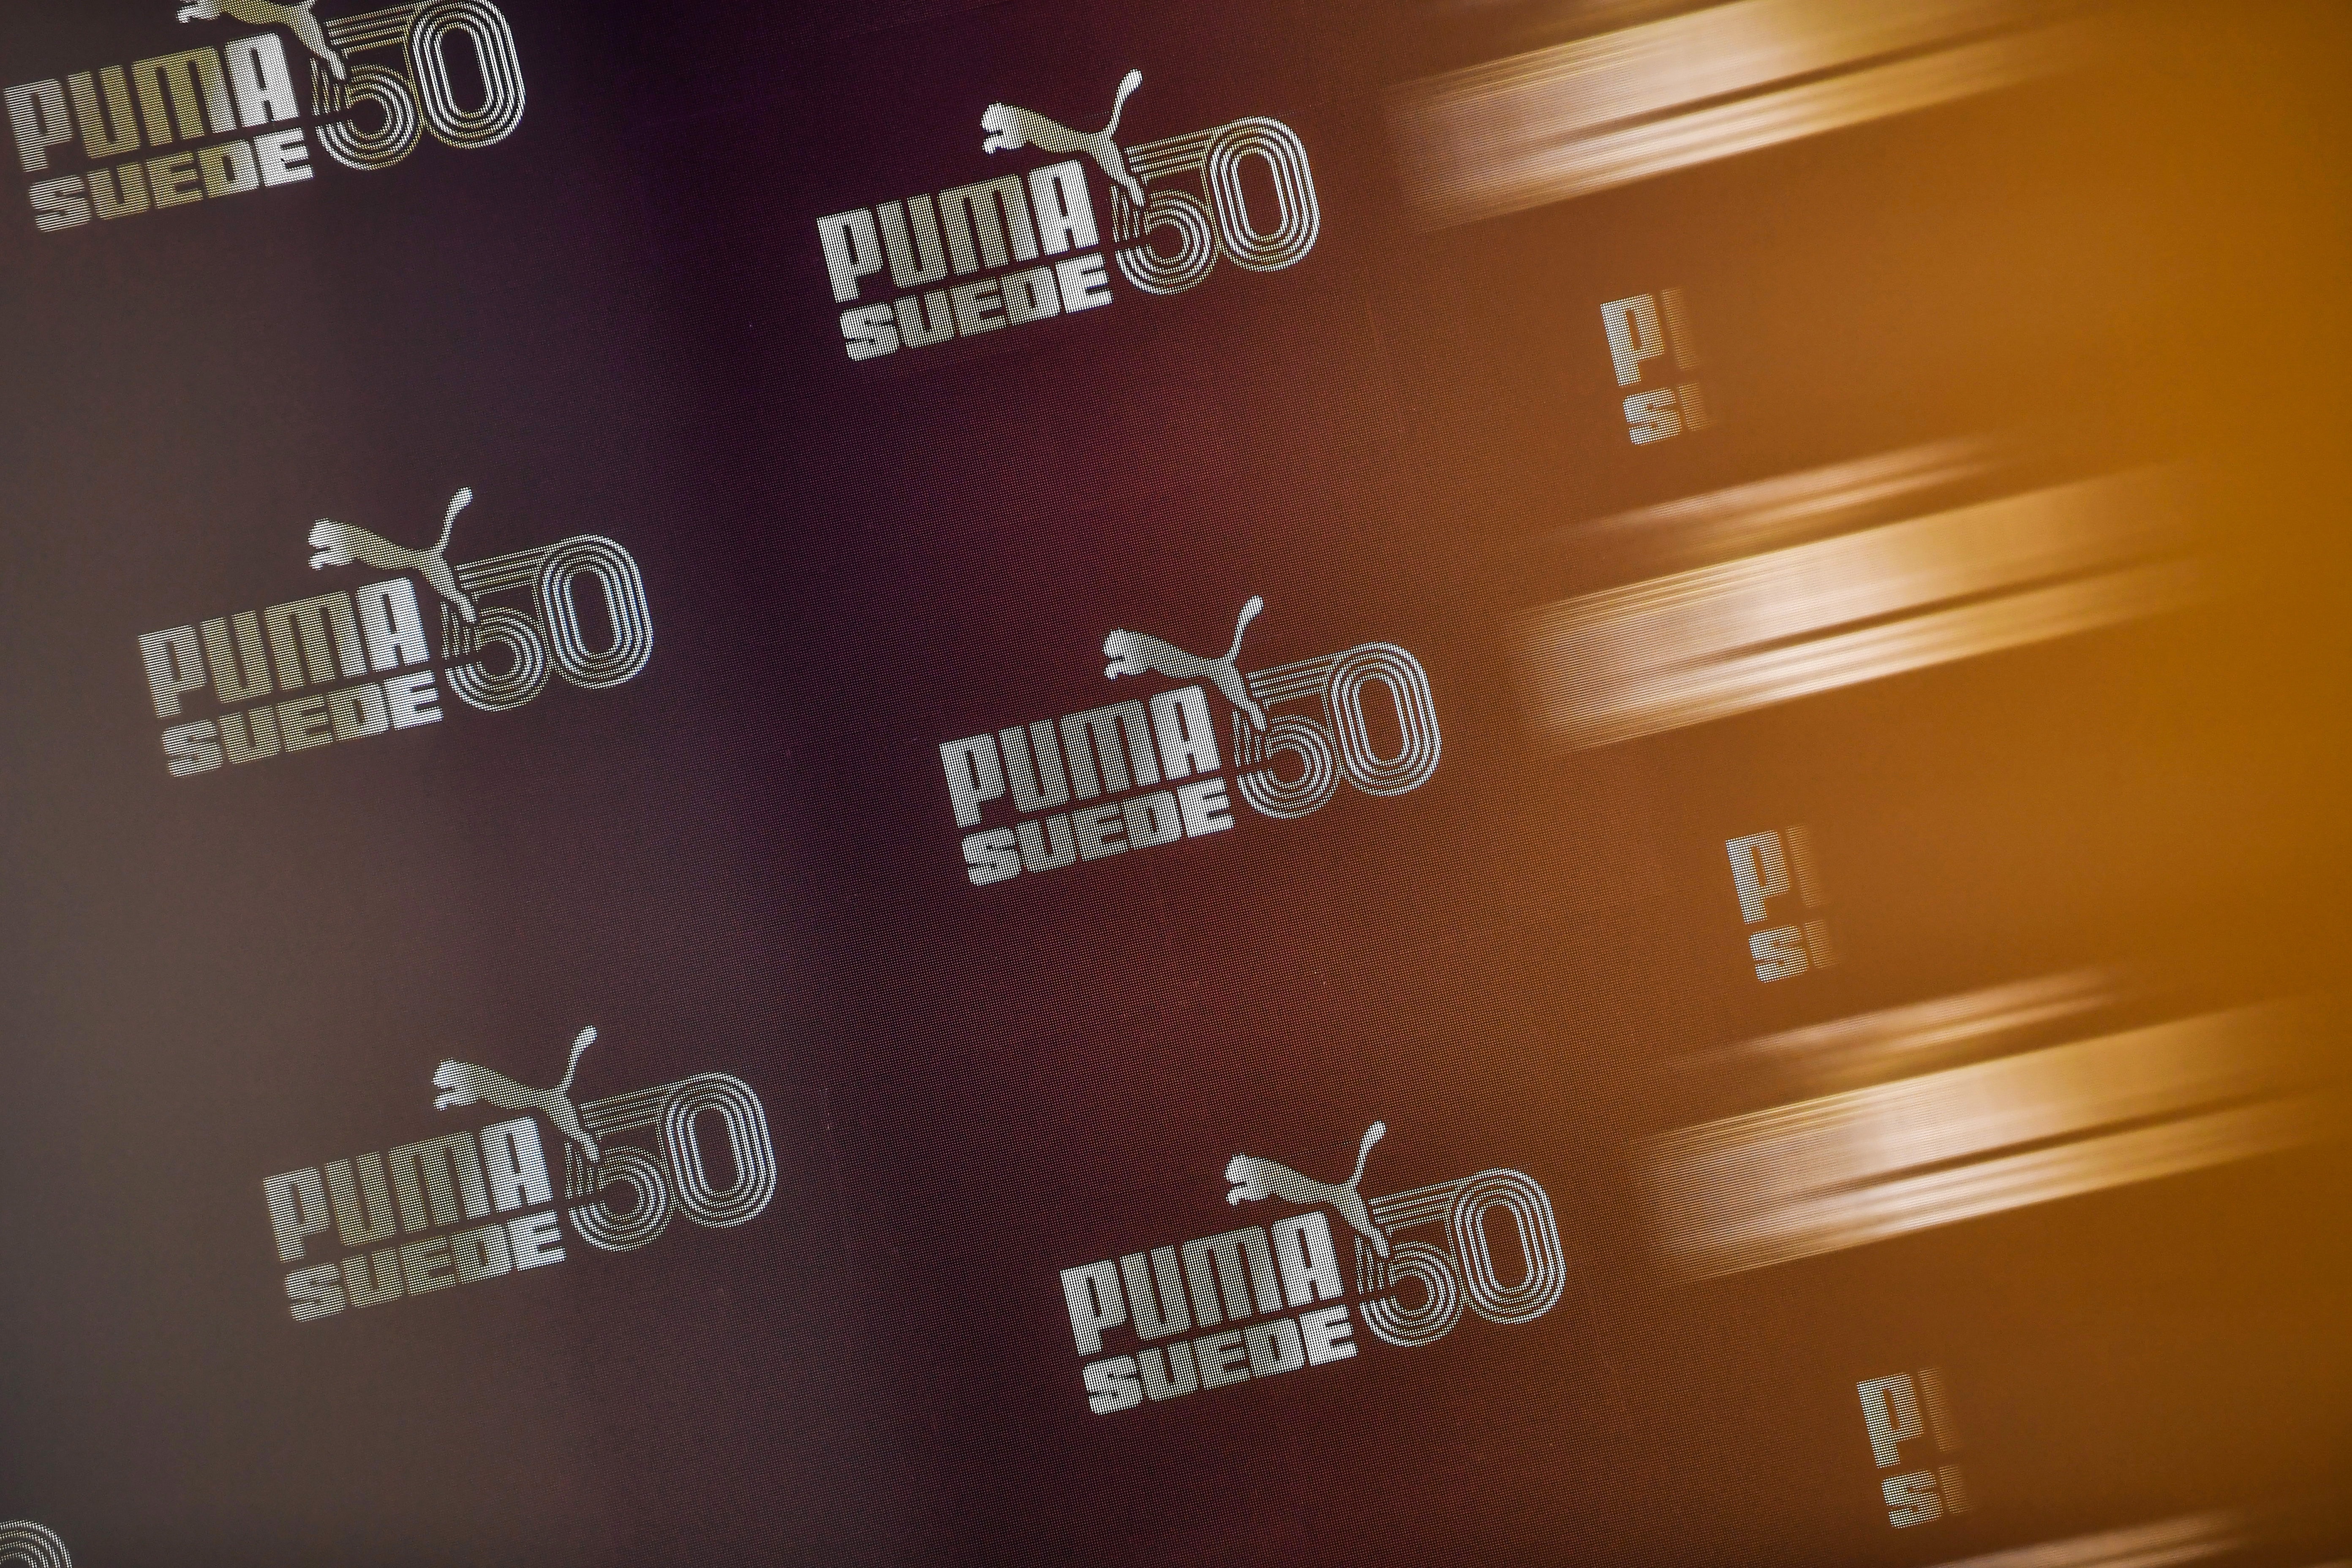 PUMA 「天生傳奇」Suede 50 周年紀念展開幕回顧